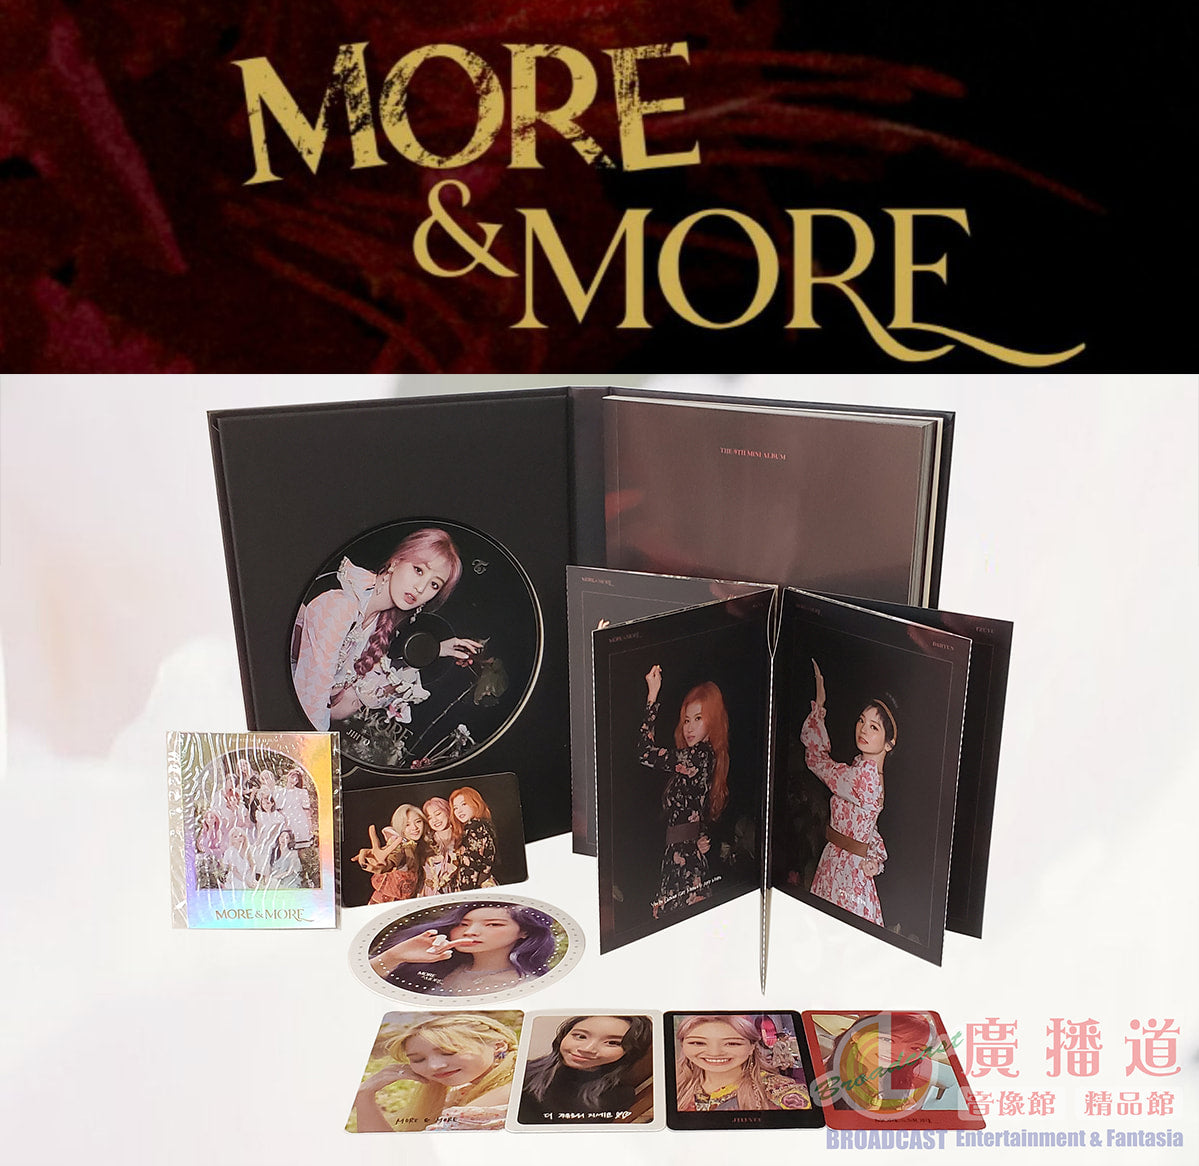 Twice Mini Album Vol. 9 - MORE & MORE (Random Version)